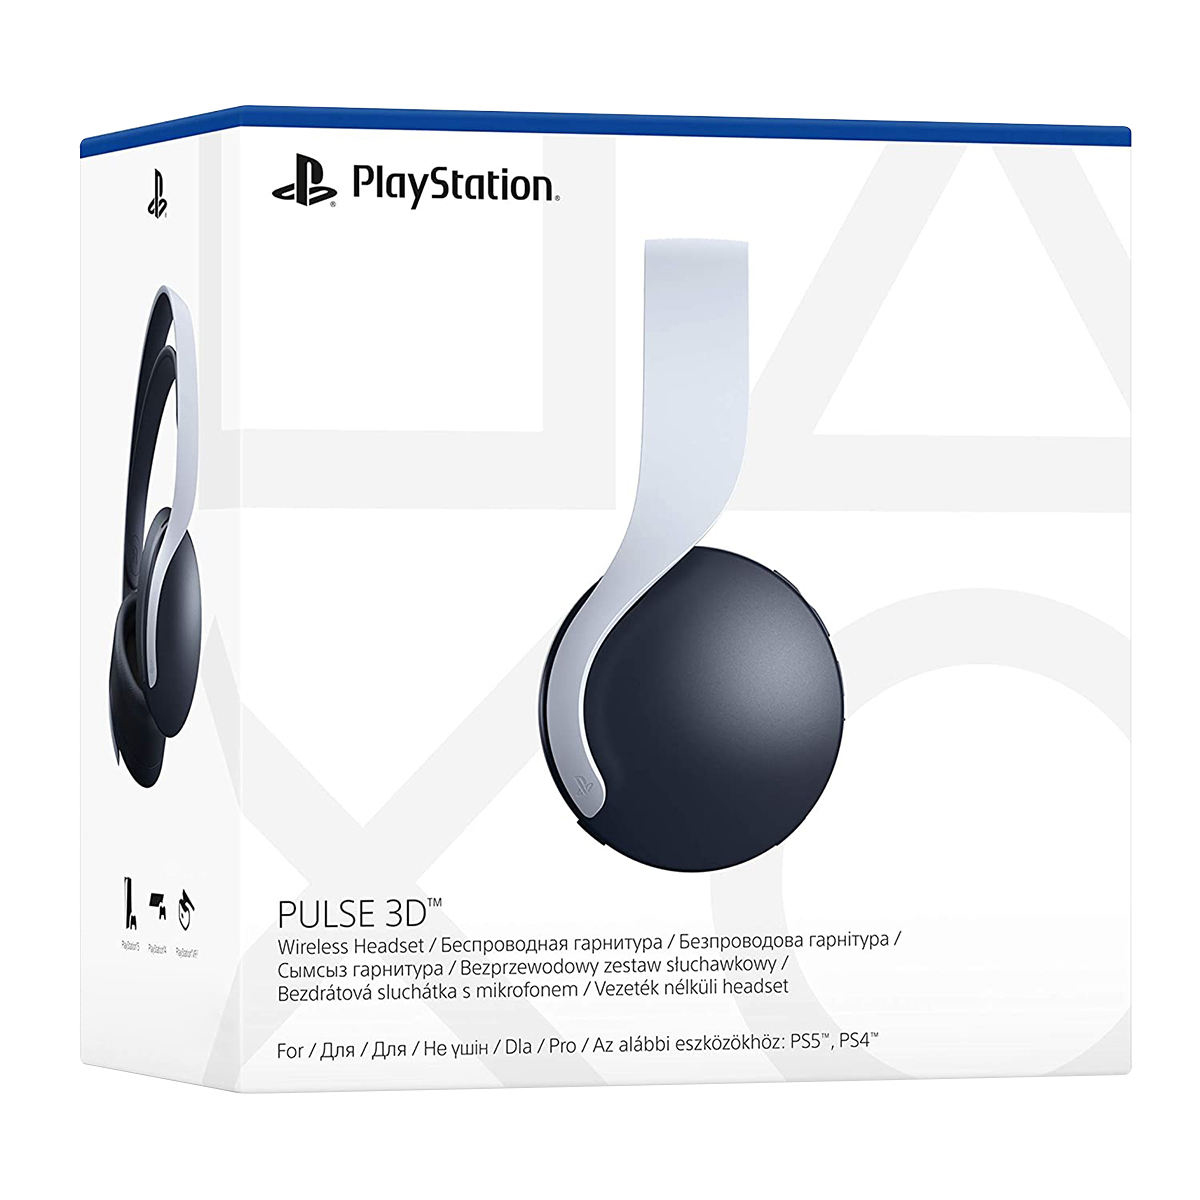 مجموعه کنسول بازی سونی مدل PlayStation 5 Drive به همراه هدست سونی Pulse 3D و دسته اضافی